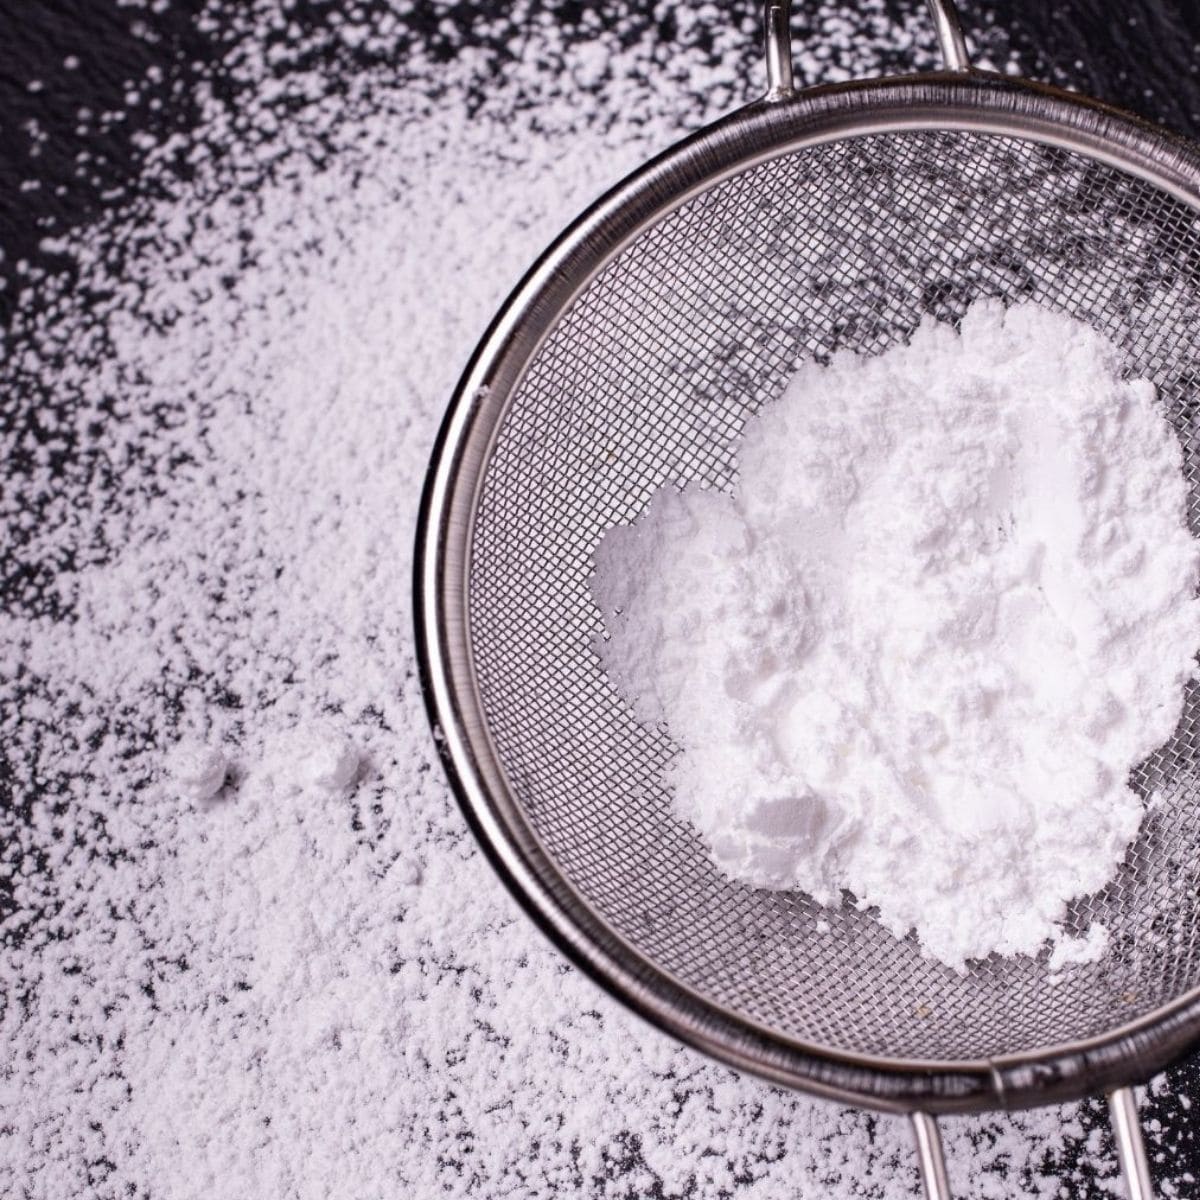 Pilihan pengganti gula bubuk terbaik untuk digunakan dalam memanggang.